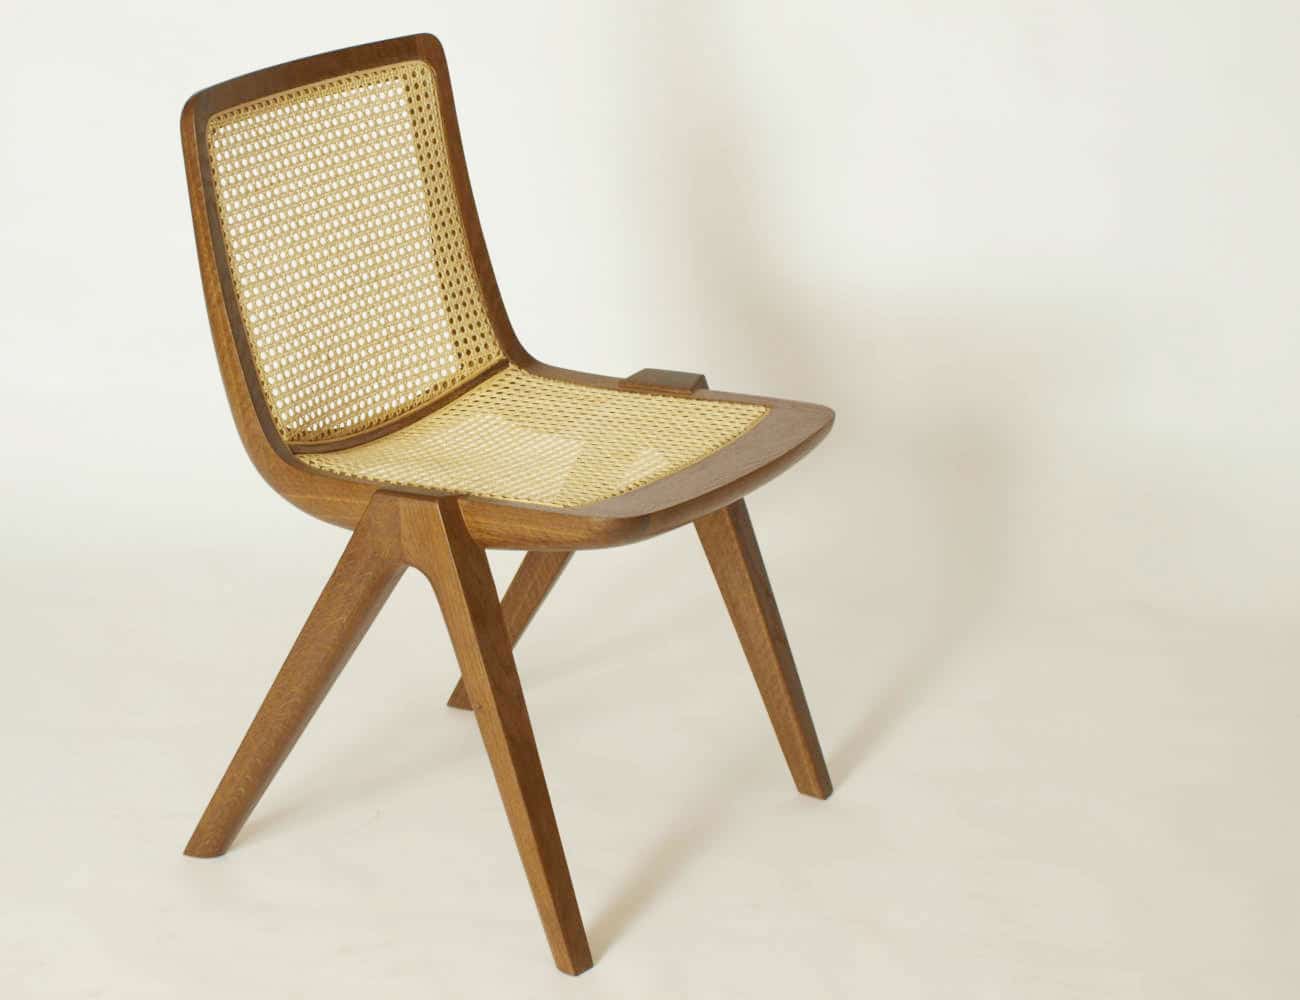 Den Stuhl gibt es in unterschiedlichen Holzarten